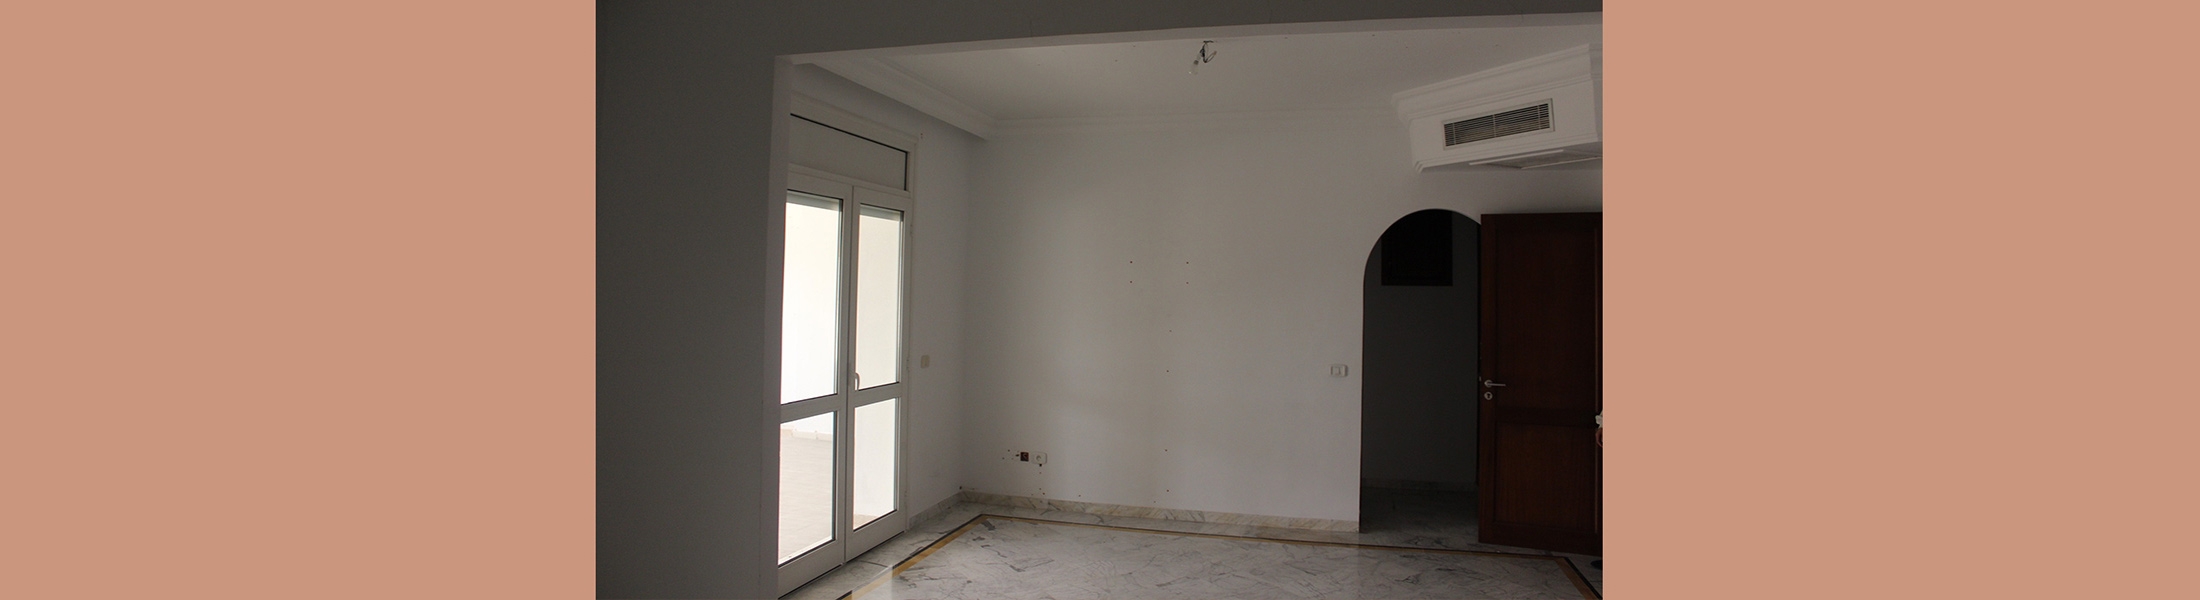 الشقة سيتي سنتر 102 بالمركز العمراني الشمالي – تونس (طلب العروض عدد 02 لسنة 2022)